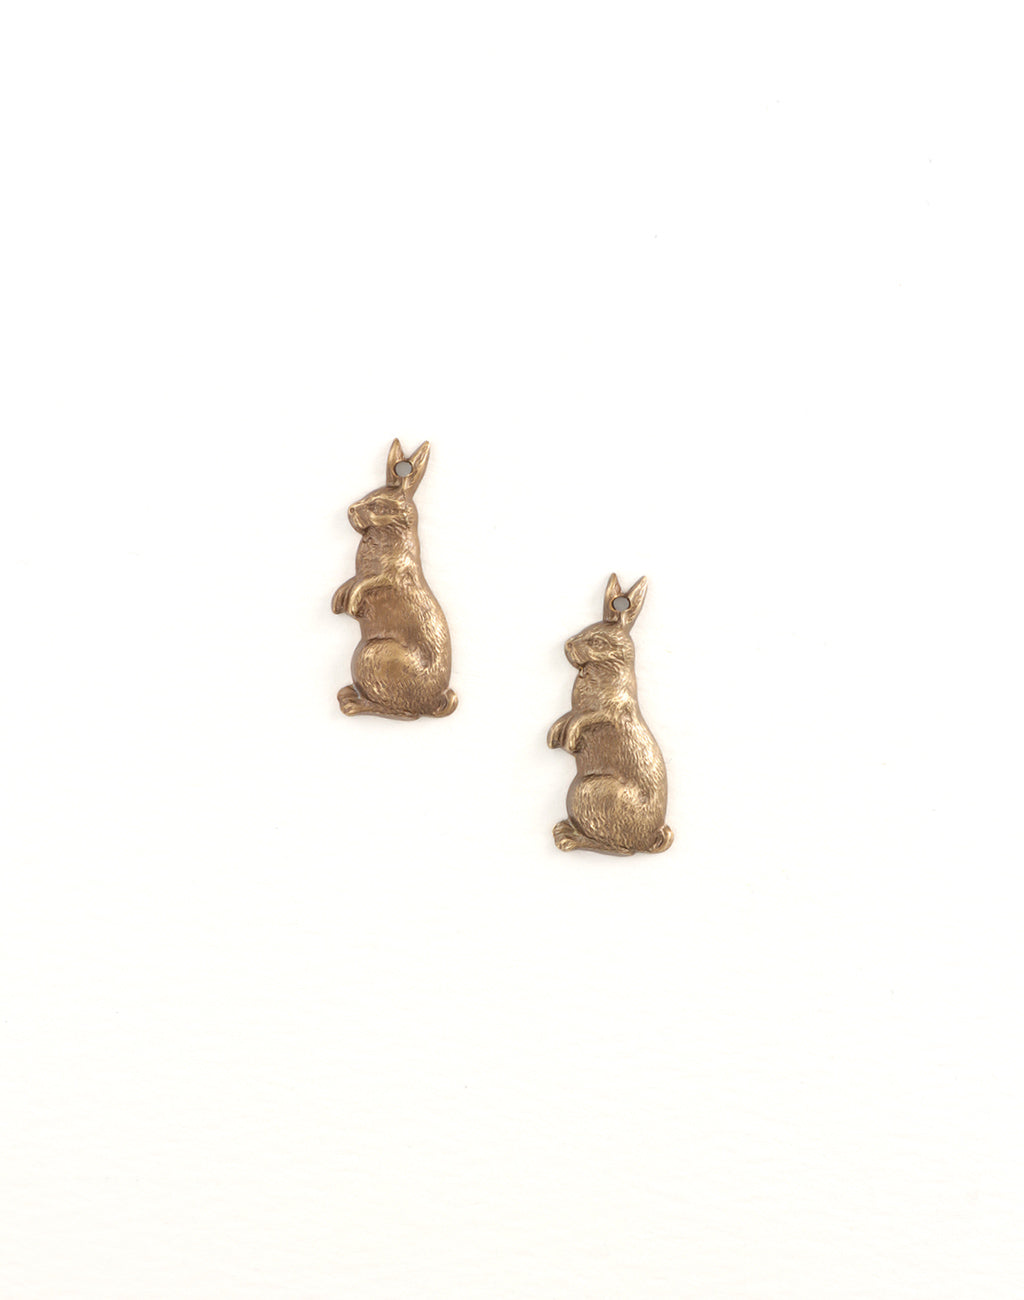 Artful Rabbit, 25x10mm, (2pcs)